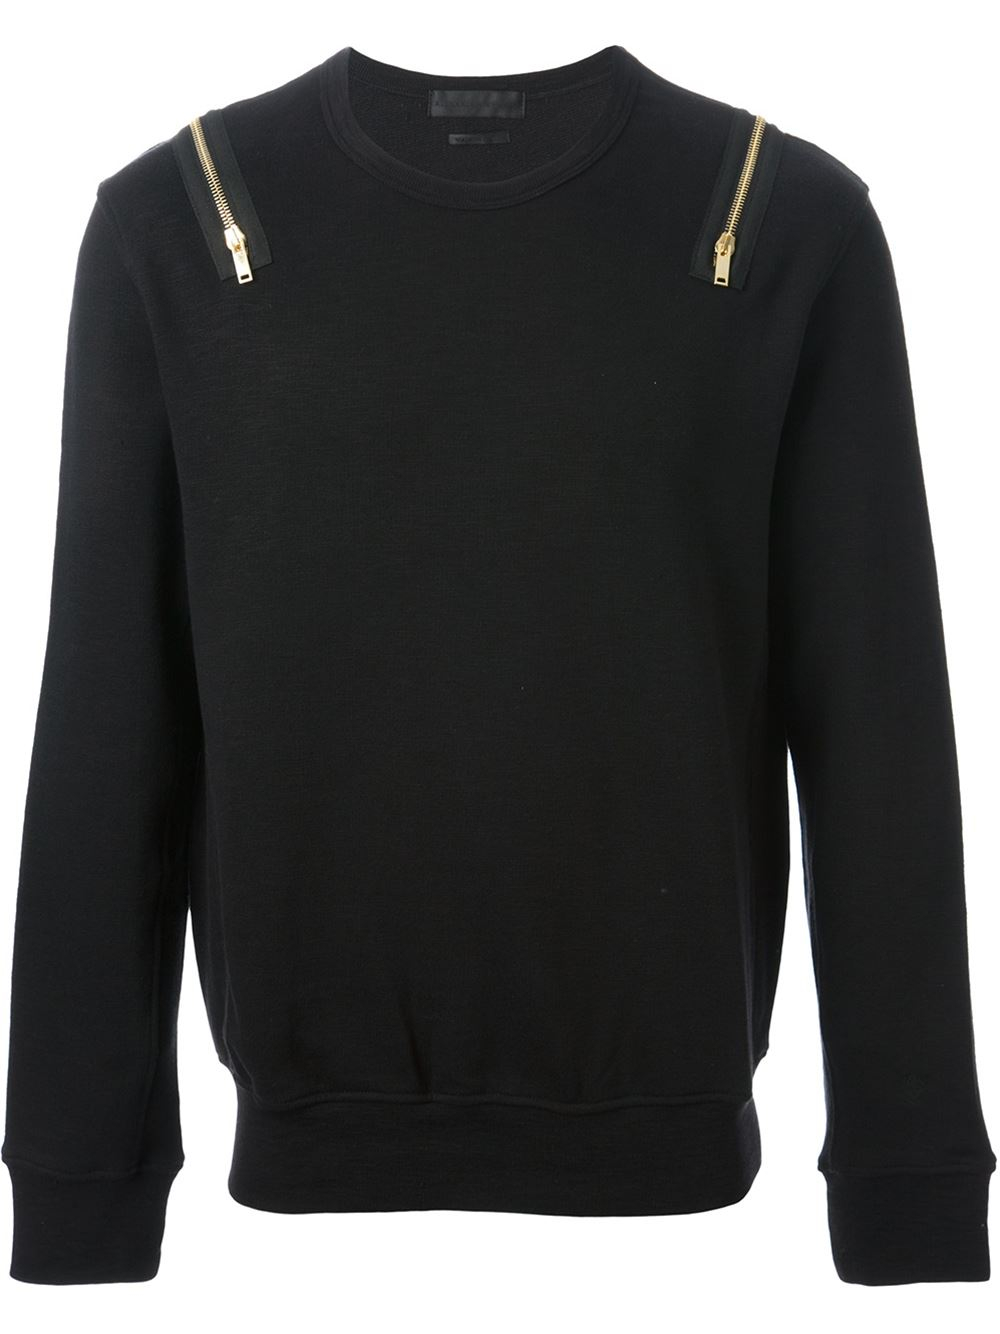 Lyst - Alexander Mcqueen Zip Sweatshirt in Black for Men